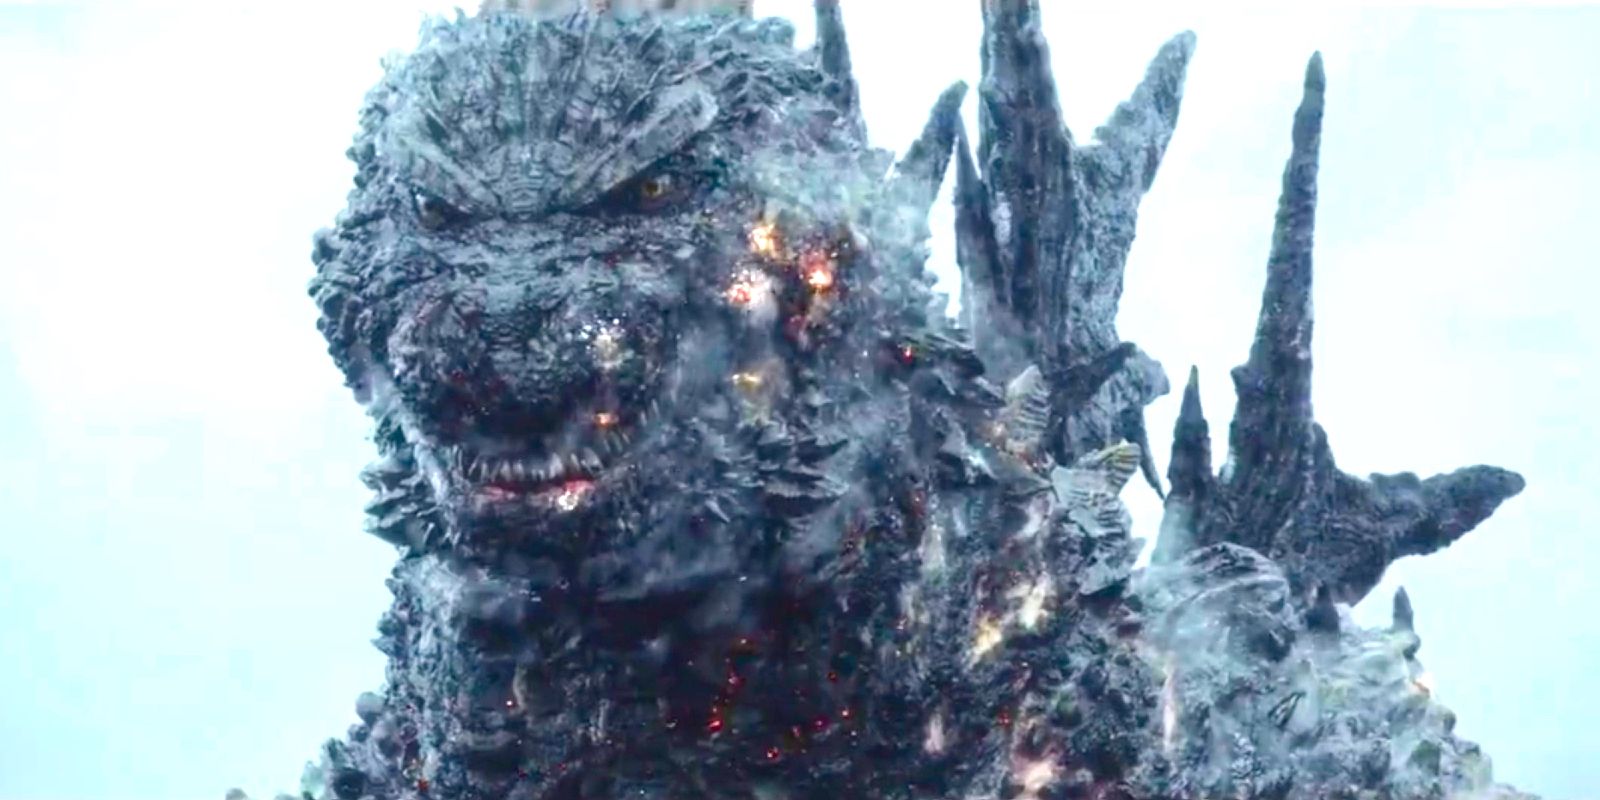 Las imágenes de la película Godzilla revelan los nuevos poderes del Kaiju a medida que alcanza nuevos niveles de destrucción